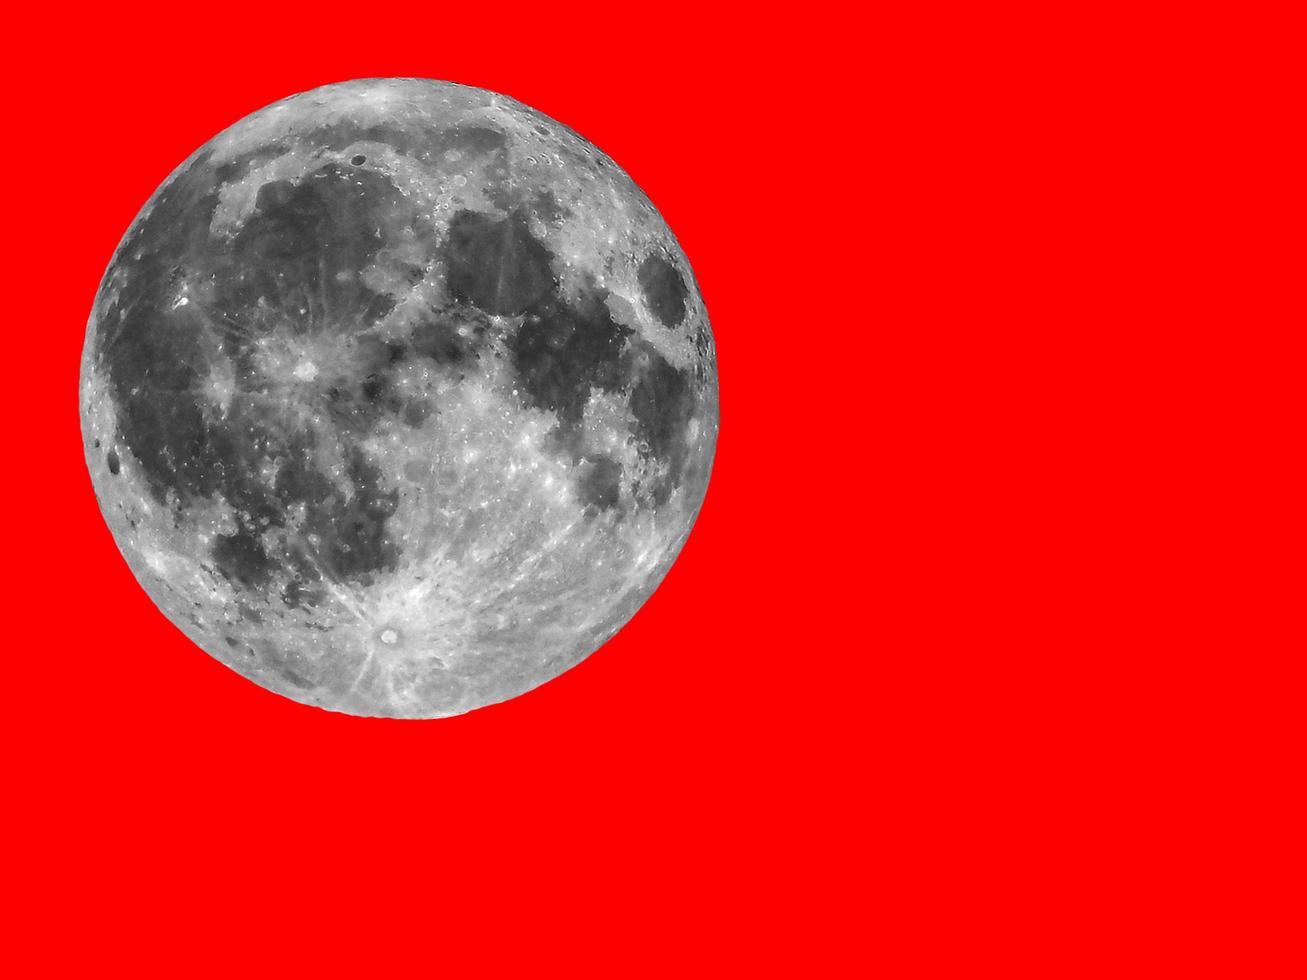 lua cheia vista com telescópio, fundo vermelho foto